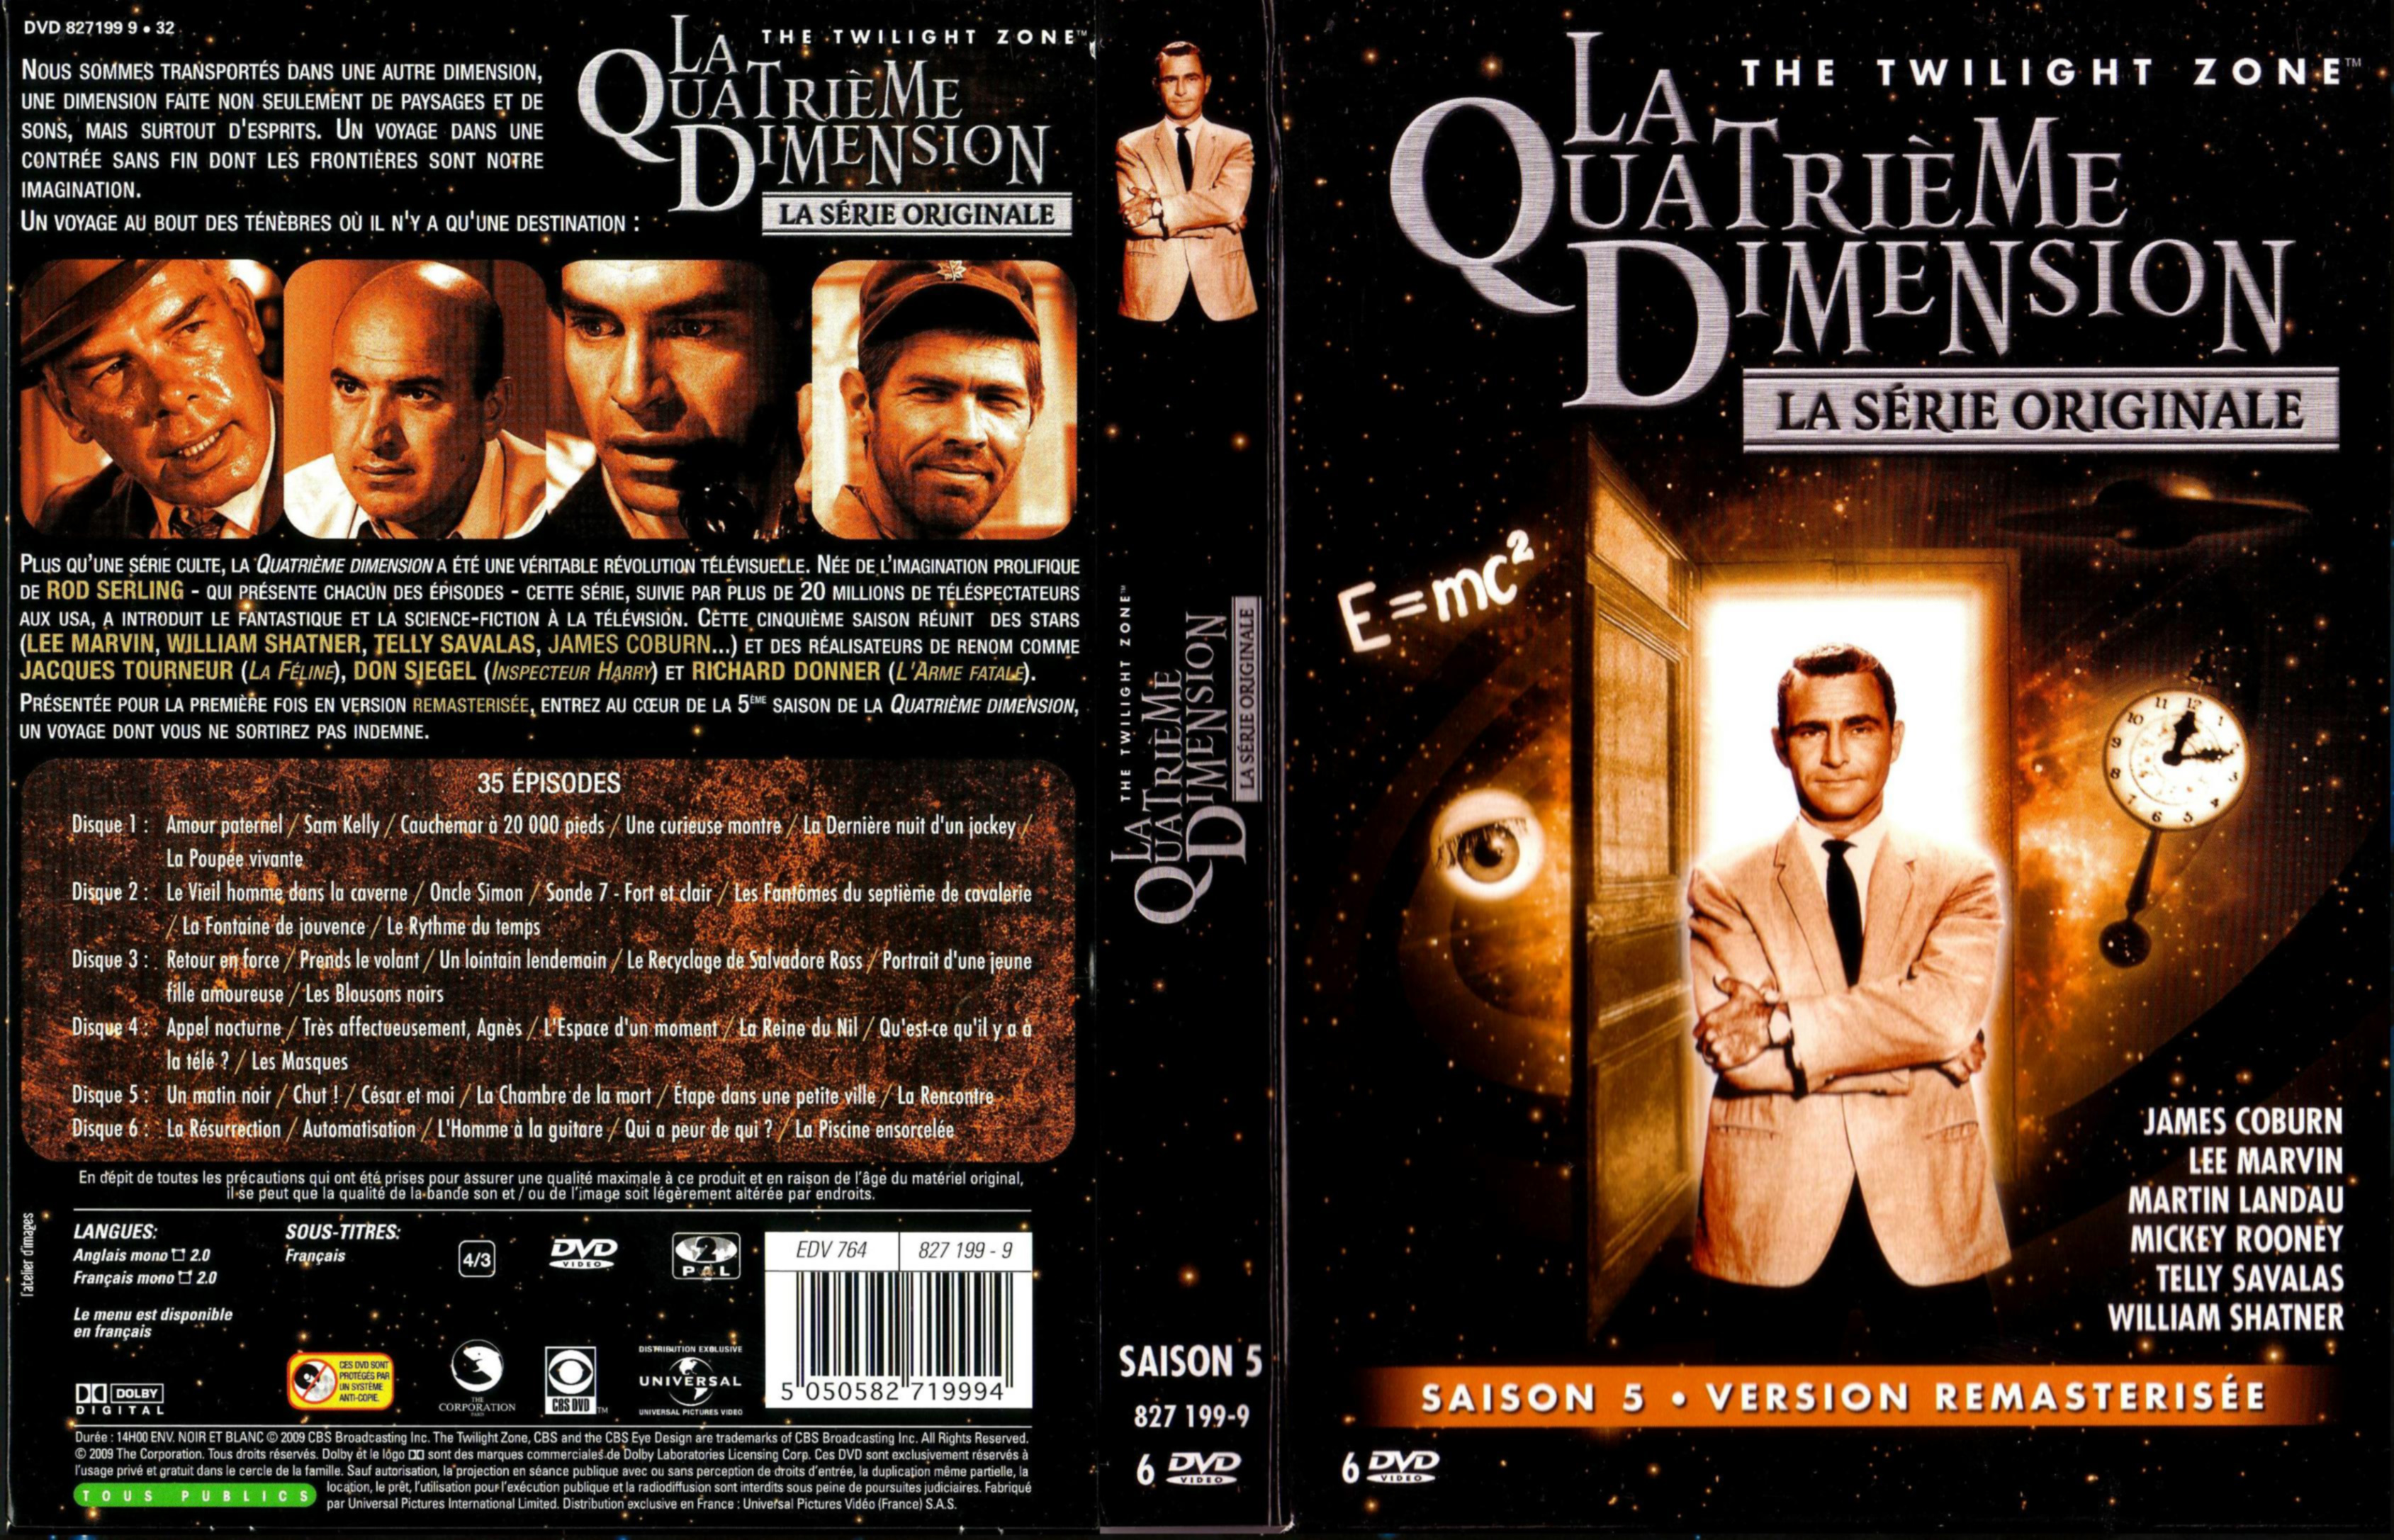 Jaquette DVD La quatrieme dimension Saison 5 COFFRET